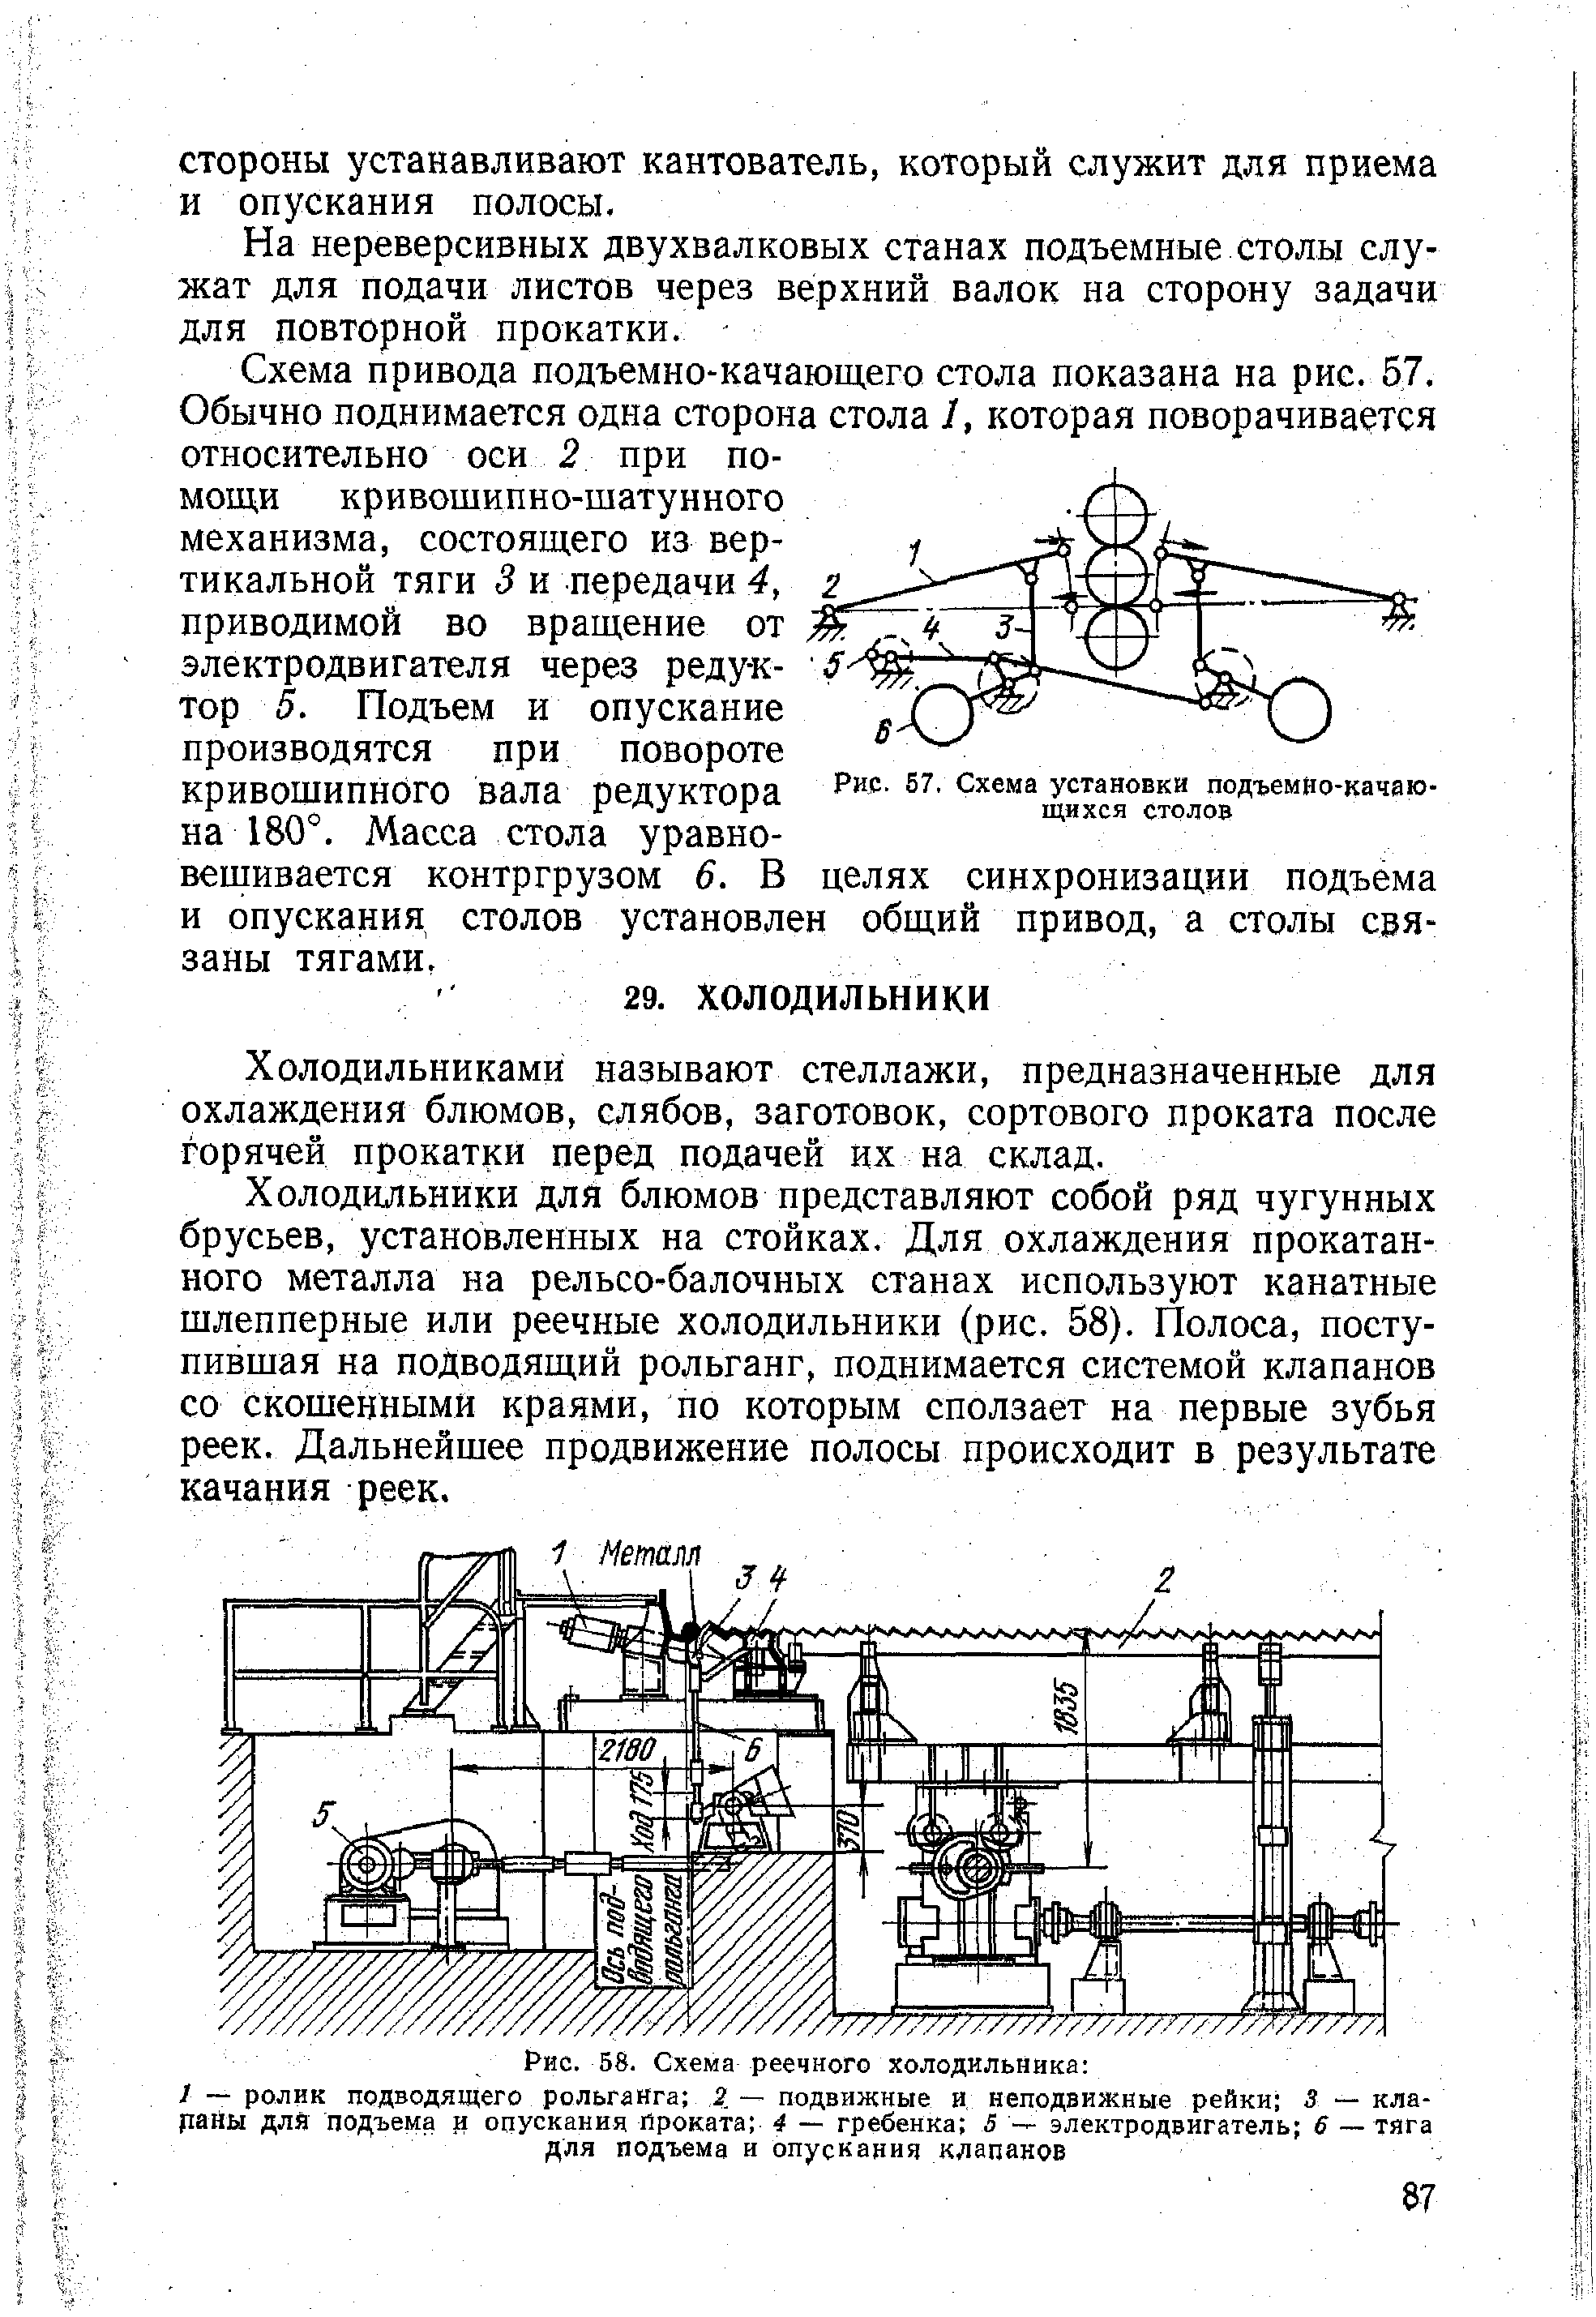 Рис. 57, Схема установки подъемйо-качаю-щихся столов
